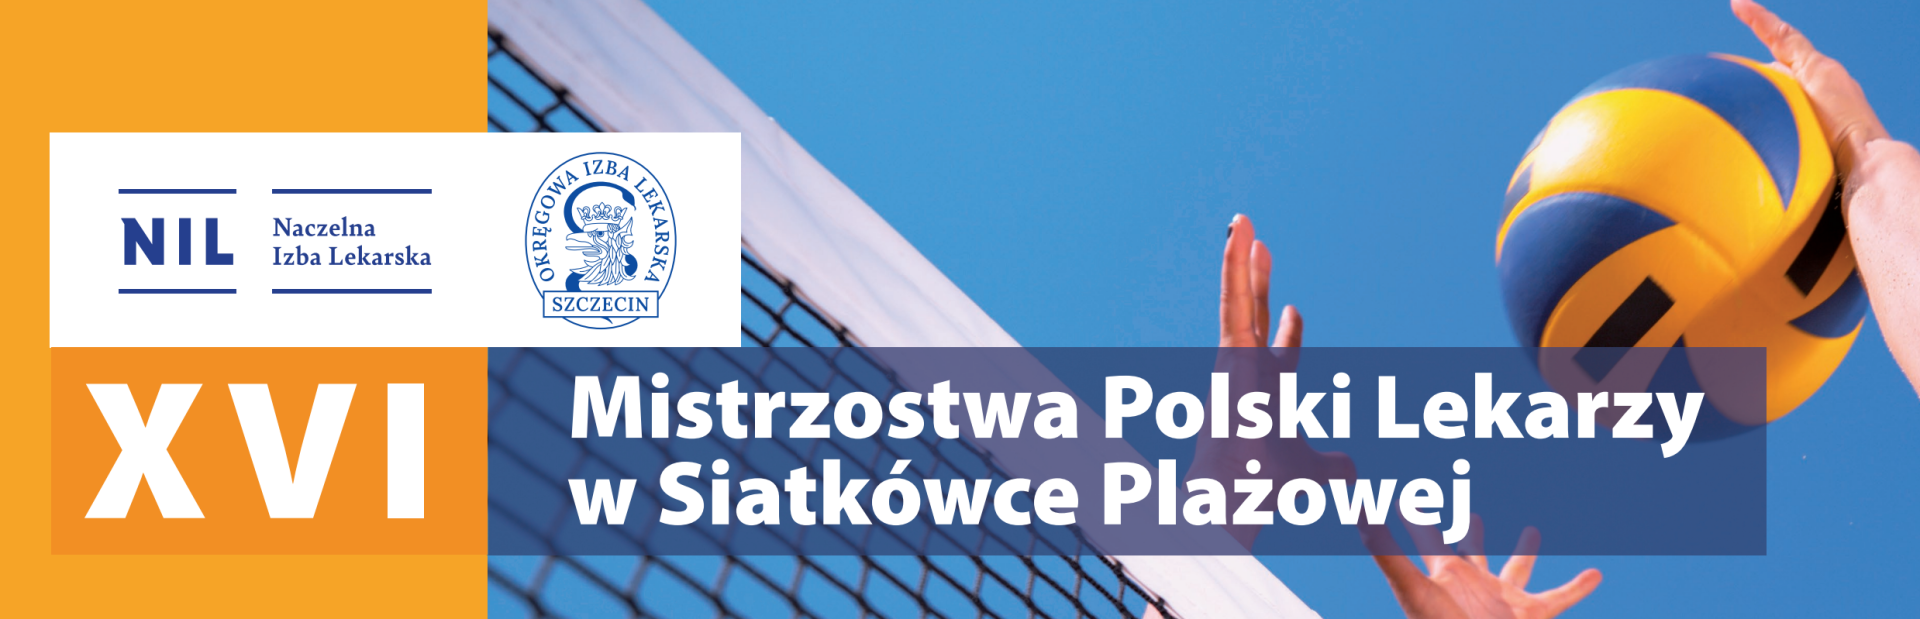 XVI Mistrzostwa Polski Lekarzy w Siatkówce Plażowej